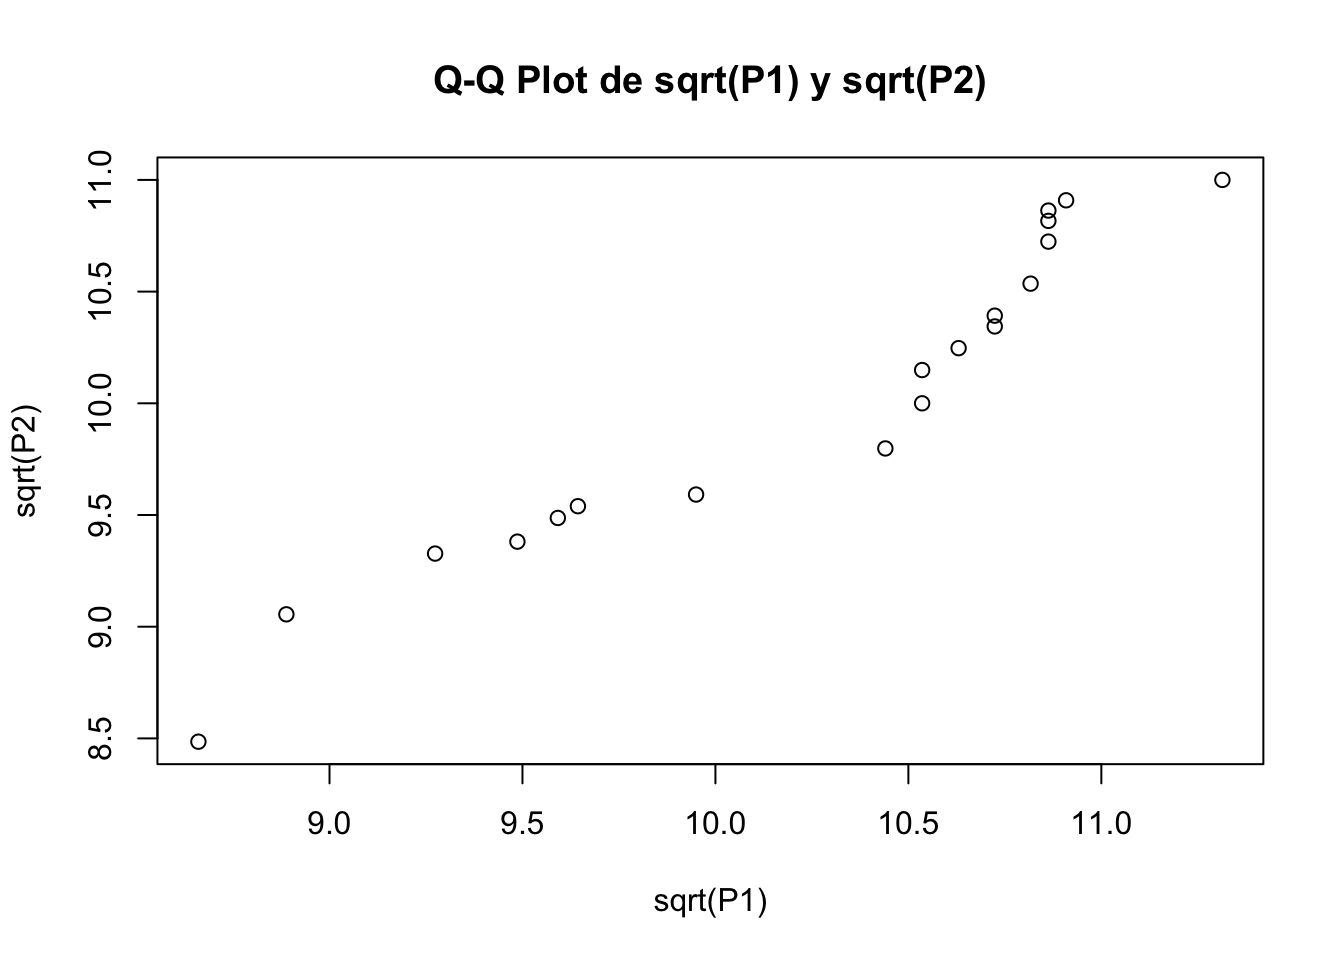 Q-Q plot de transformación logarítmica y raíz cuadra para el vector P1.